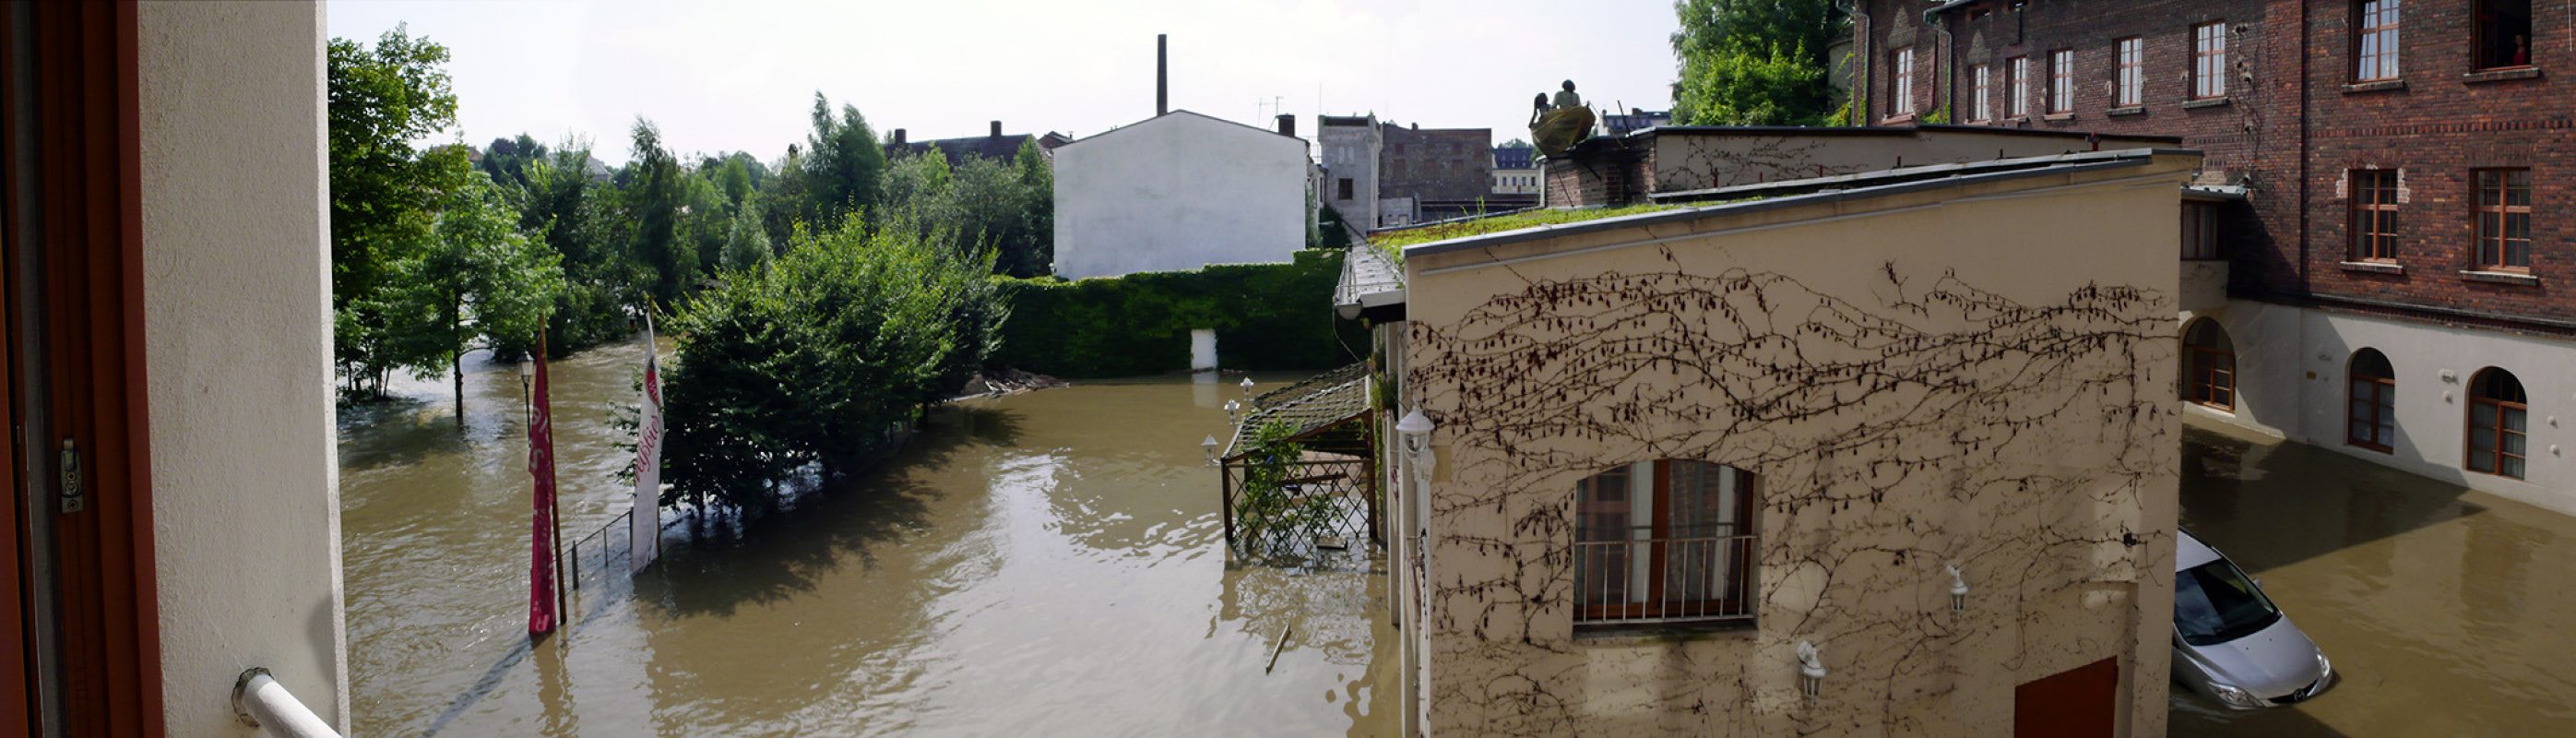 Görlitz, Hochwasser